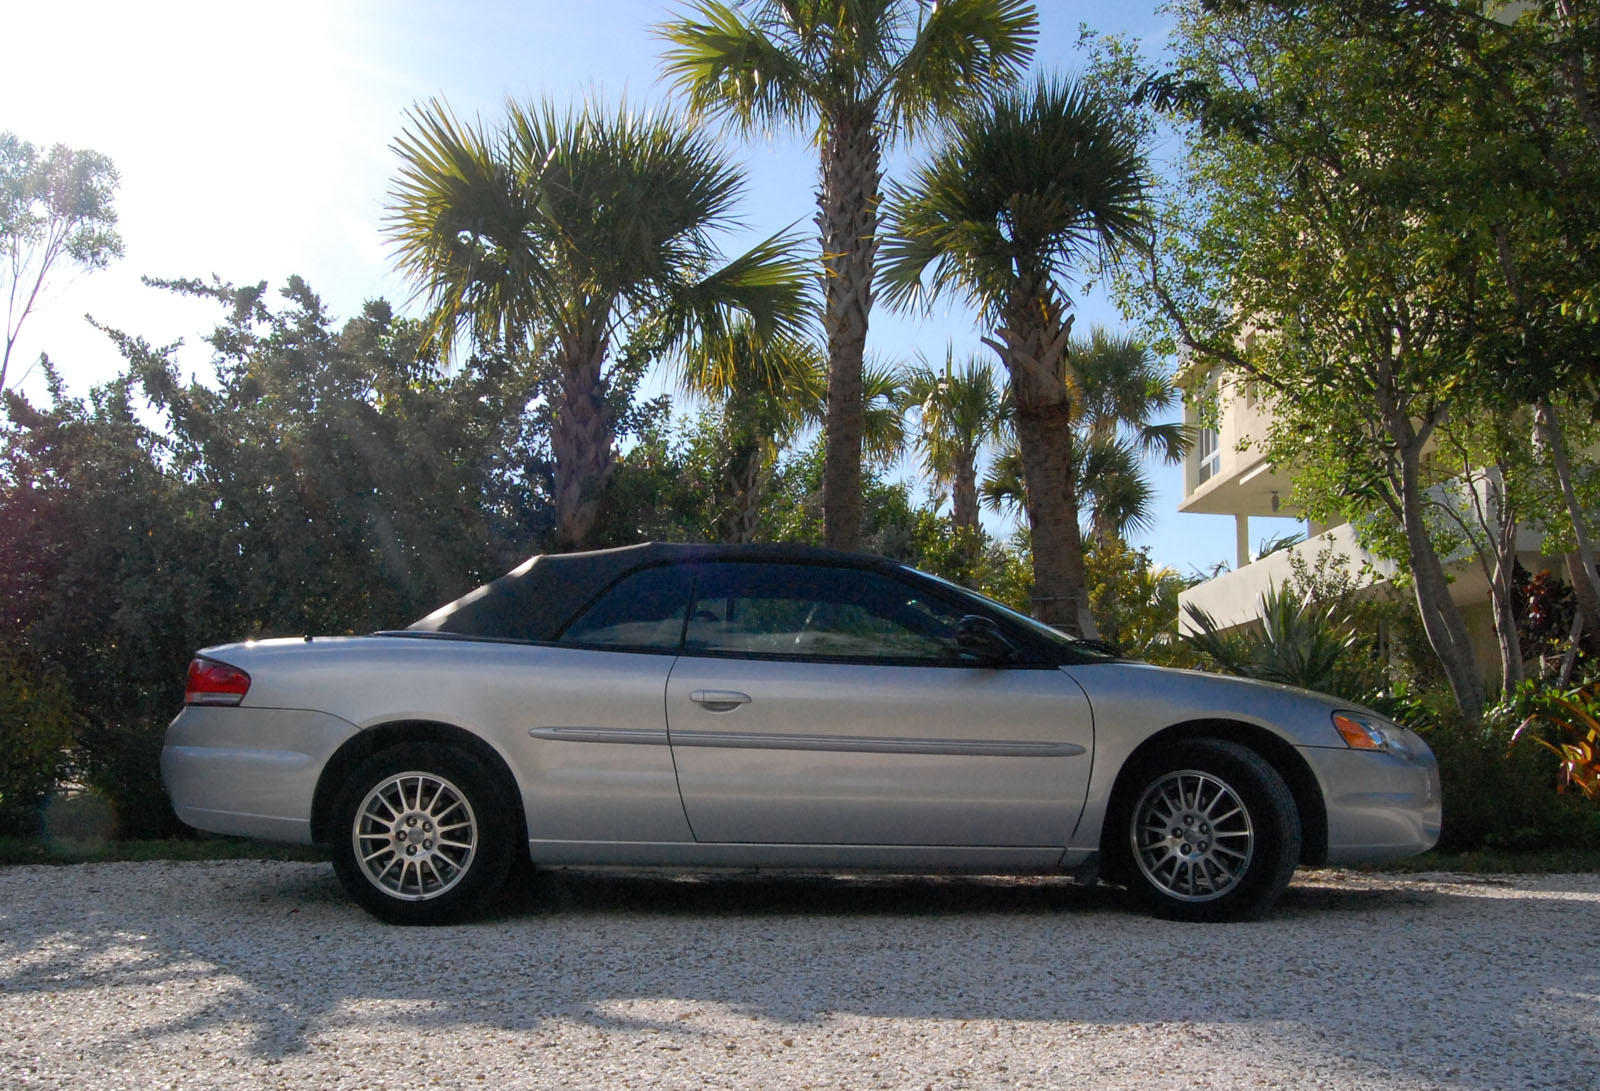 2005 Chrysler sebring edmunds reviews #2